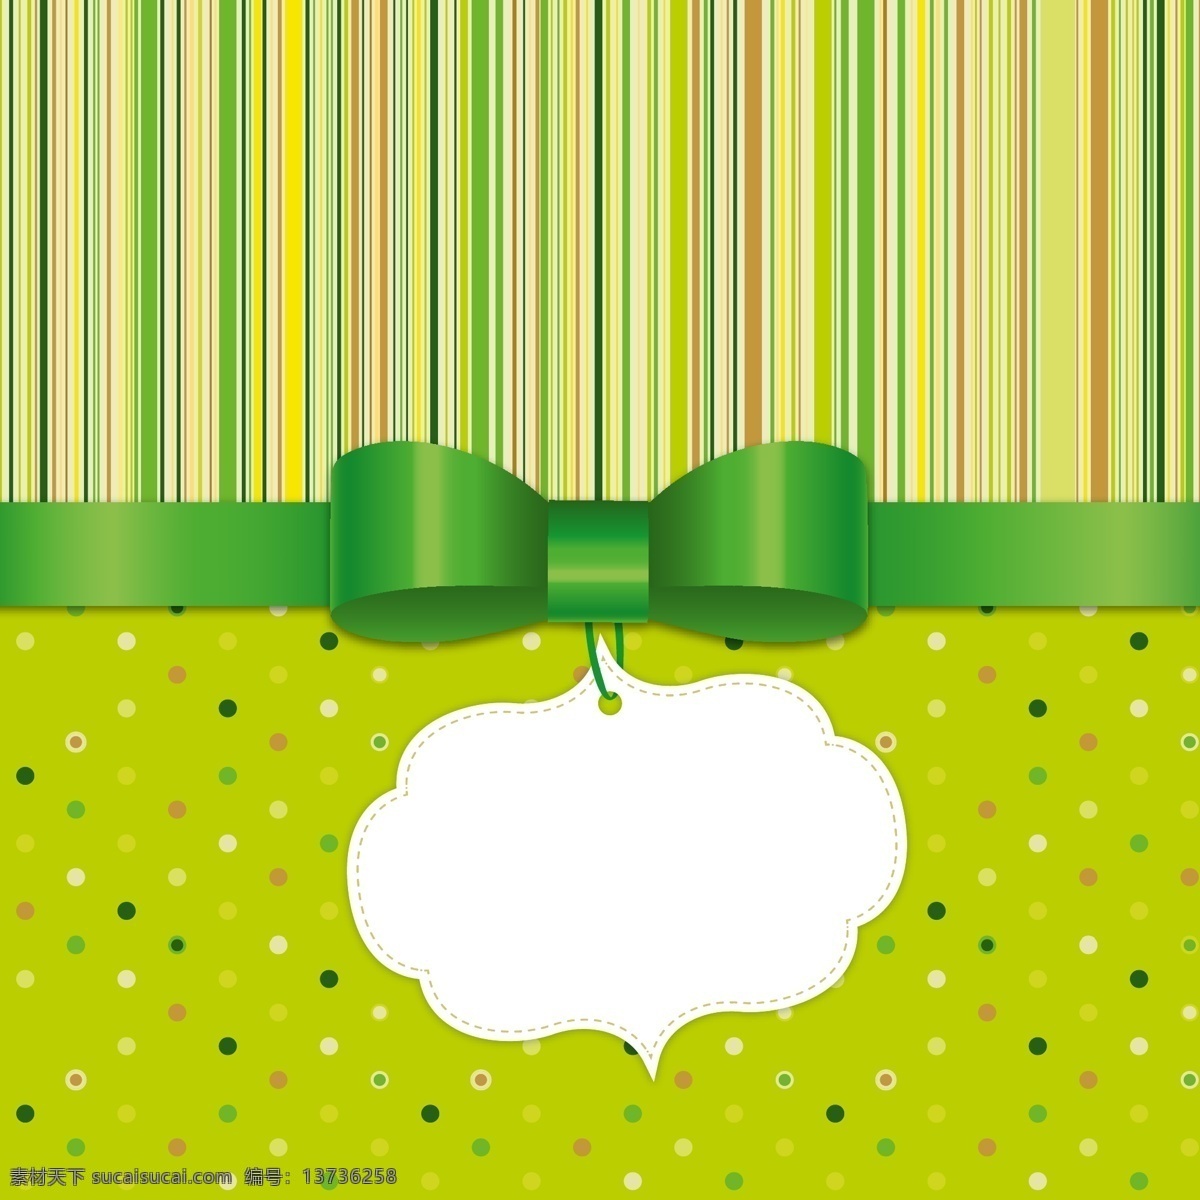 绿色 蝴蝶结 装饰 空白 吊牌 条纹 水玉点 背景 矢量图 创意图